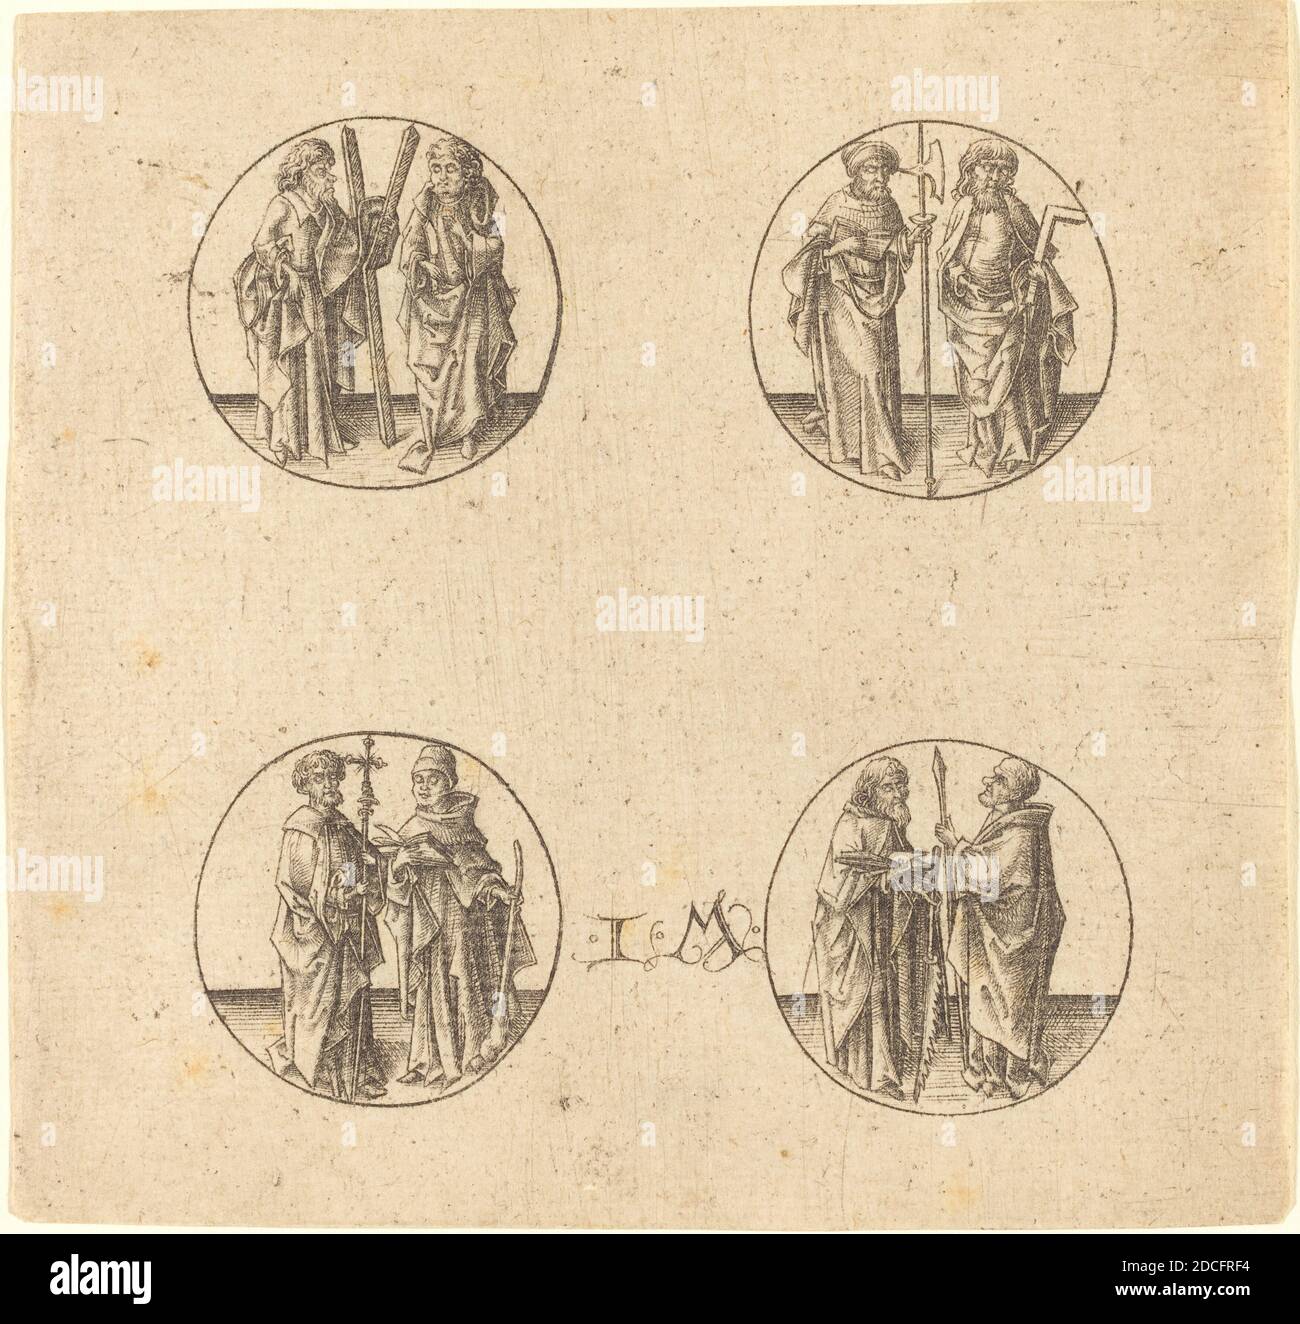 Israhel van Meckenem, (artist), German, c. 1445 - 1503, Eight Apostles in Four Roundels, engraving Stock Photo